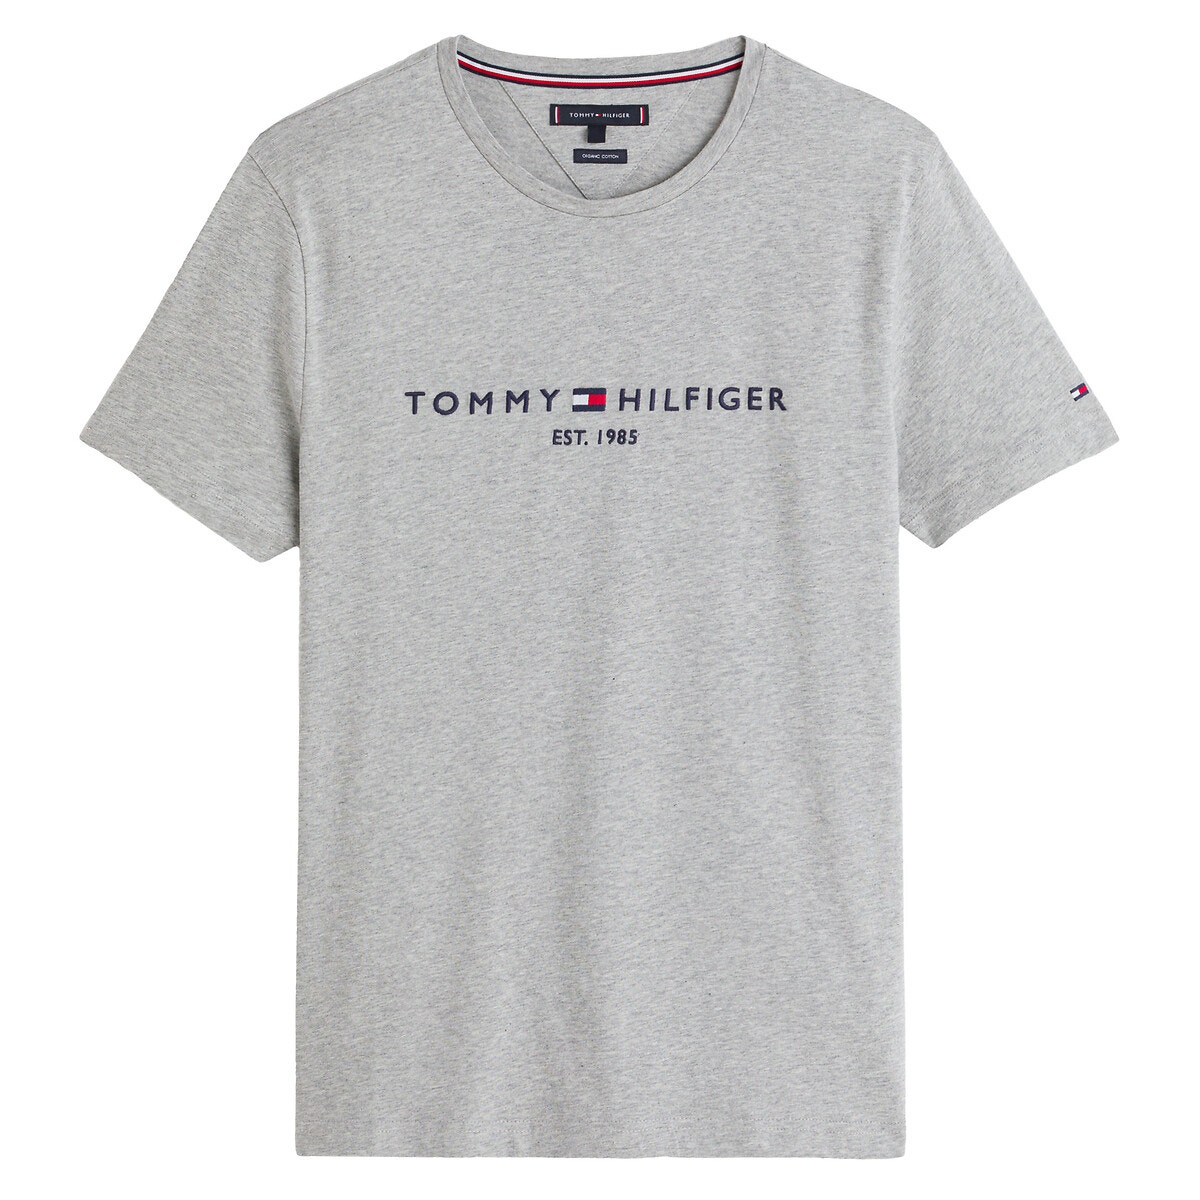 ΑΝΔΡΑΣ | Μπλούζες & Πουκάμισα | T-shirts Κοντομάνικο T-shirt, Tommy Hilfiger Flag